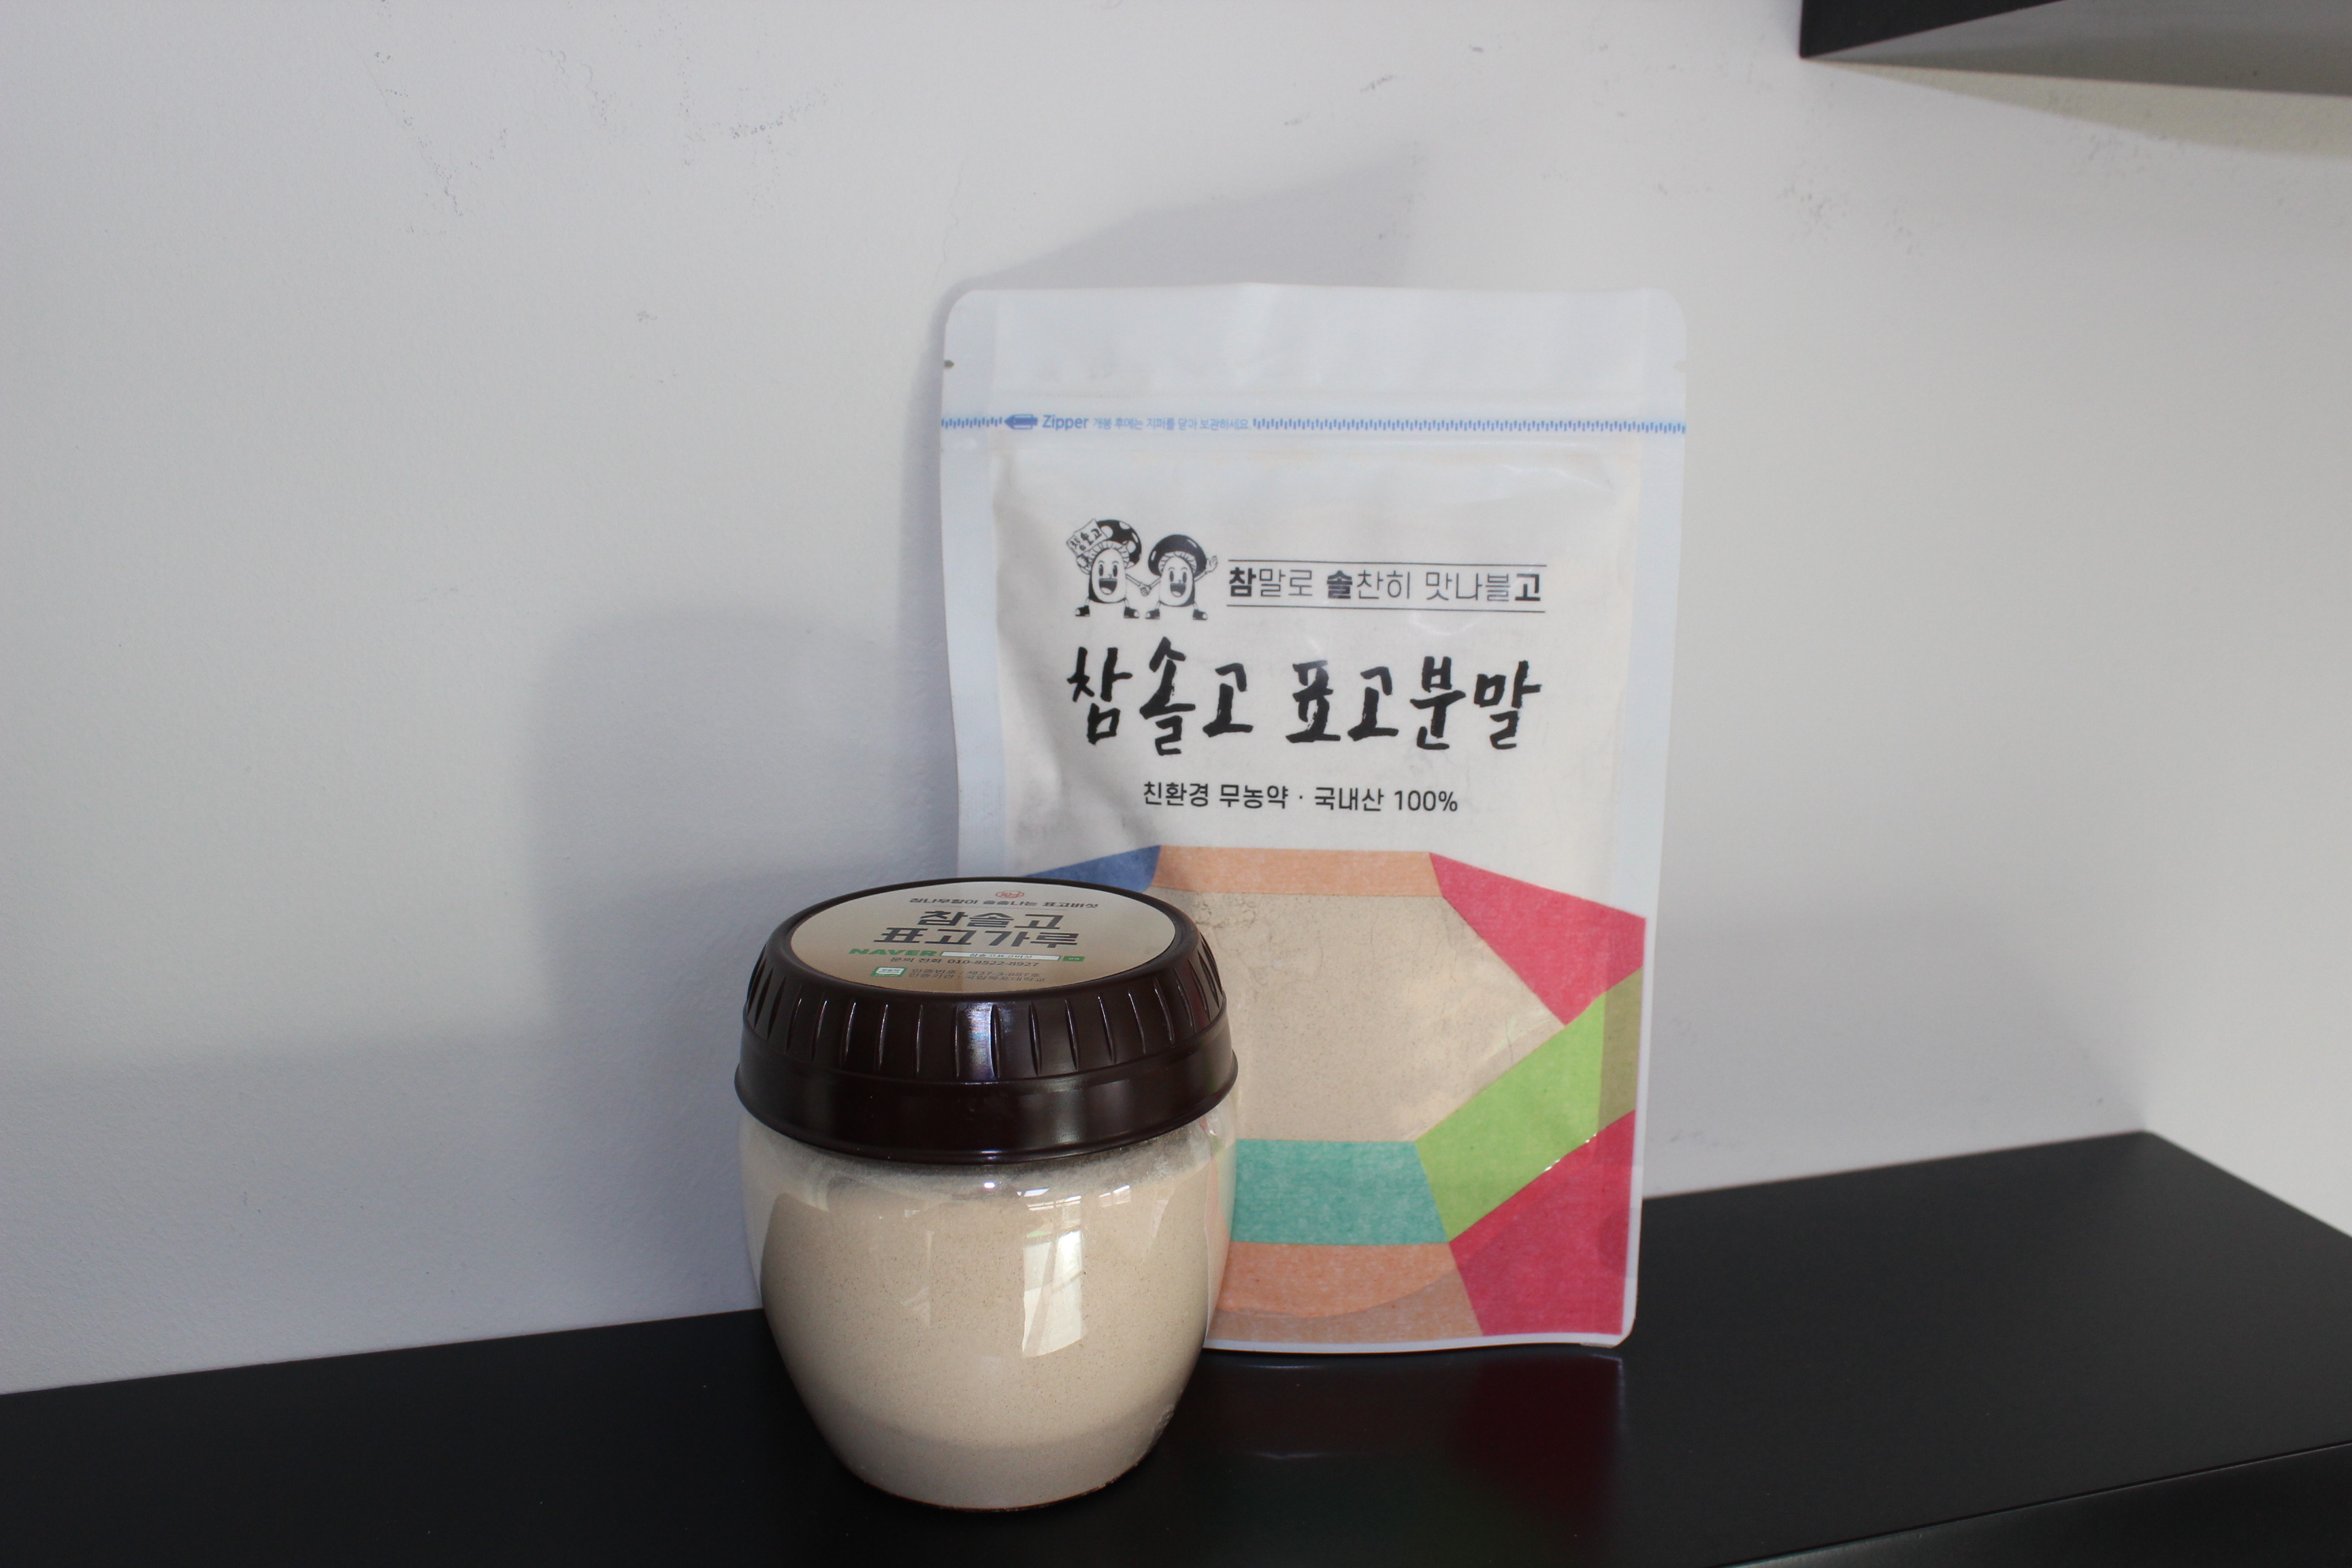 Shiitake mushroom Powder